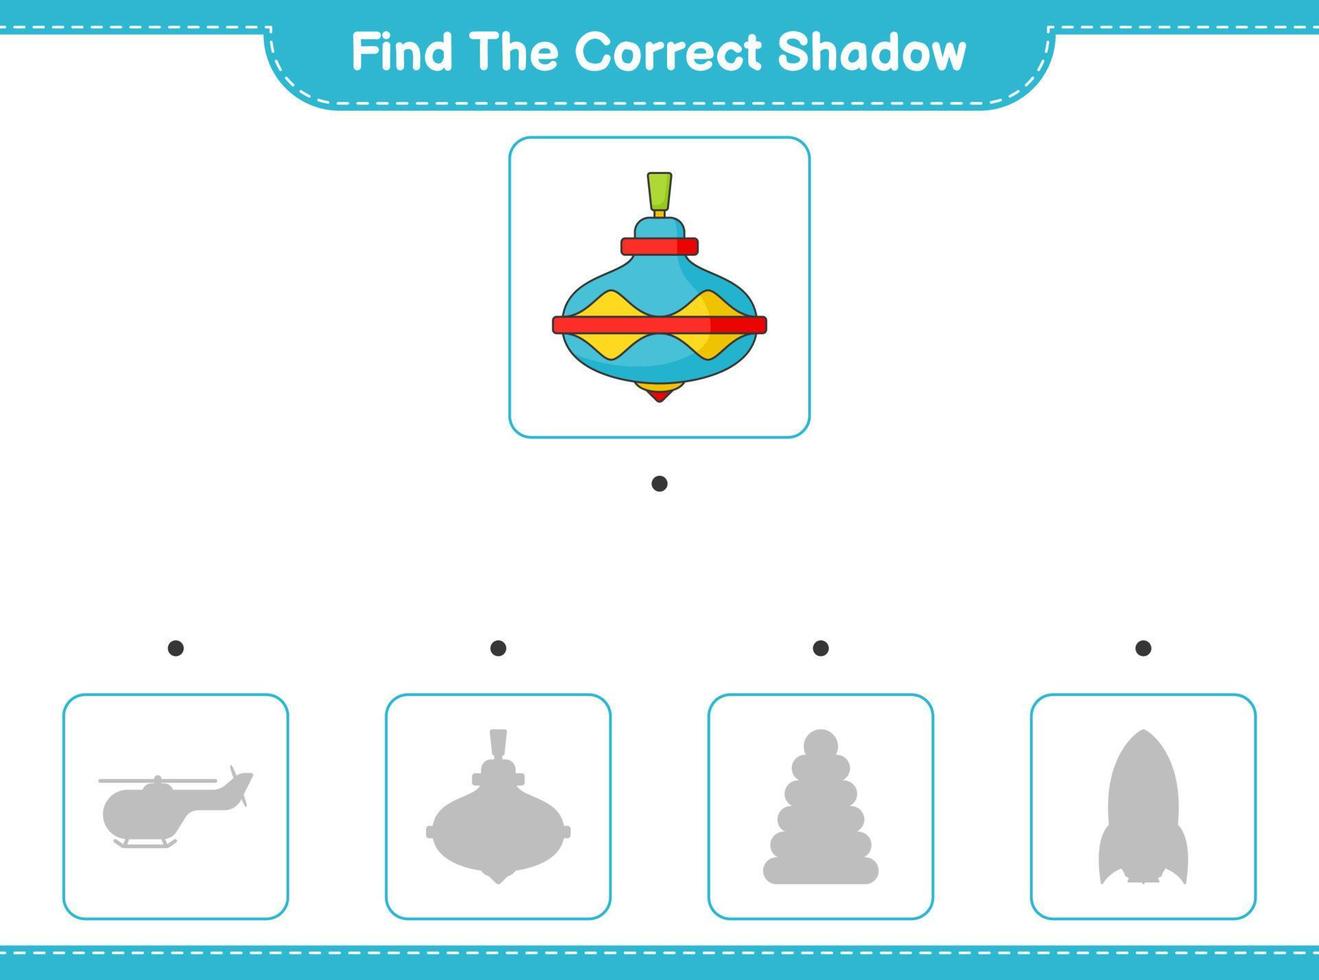 Finden Sie den richtigen Schatten. Finden Sie den richtigen Schatten des Wirbelspielzeugs und passen Sie ihn an. pädagogisches kinderspiel, druckbares arbeitsblatt, vektorillustration vektor